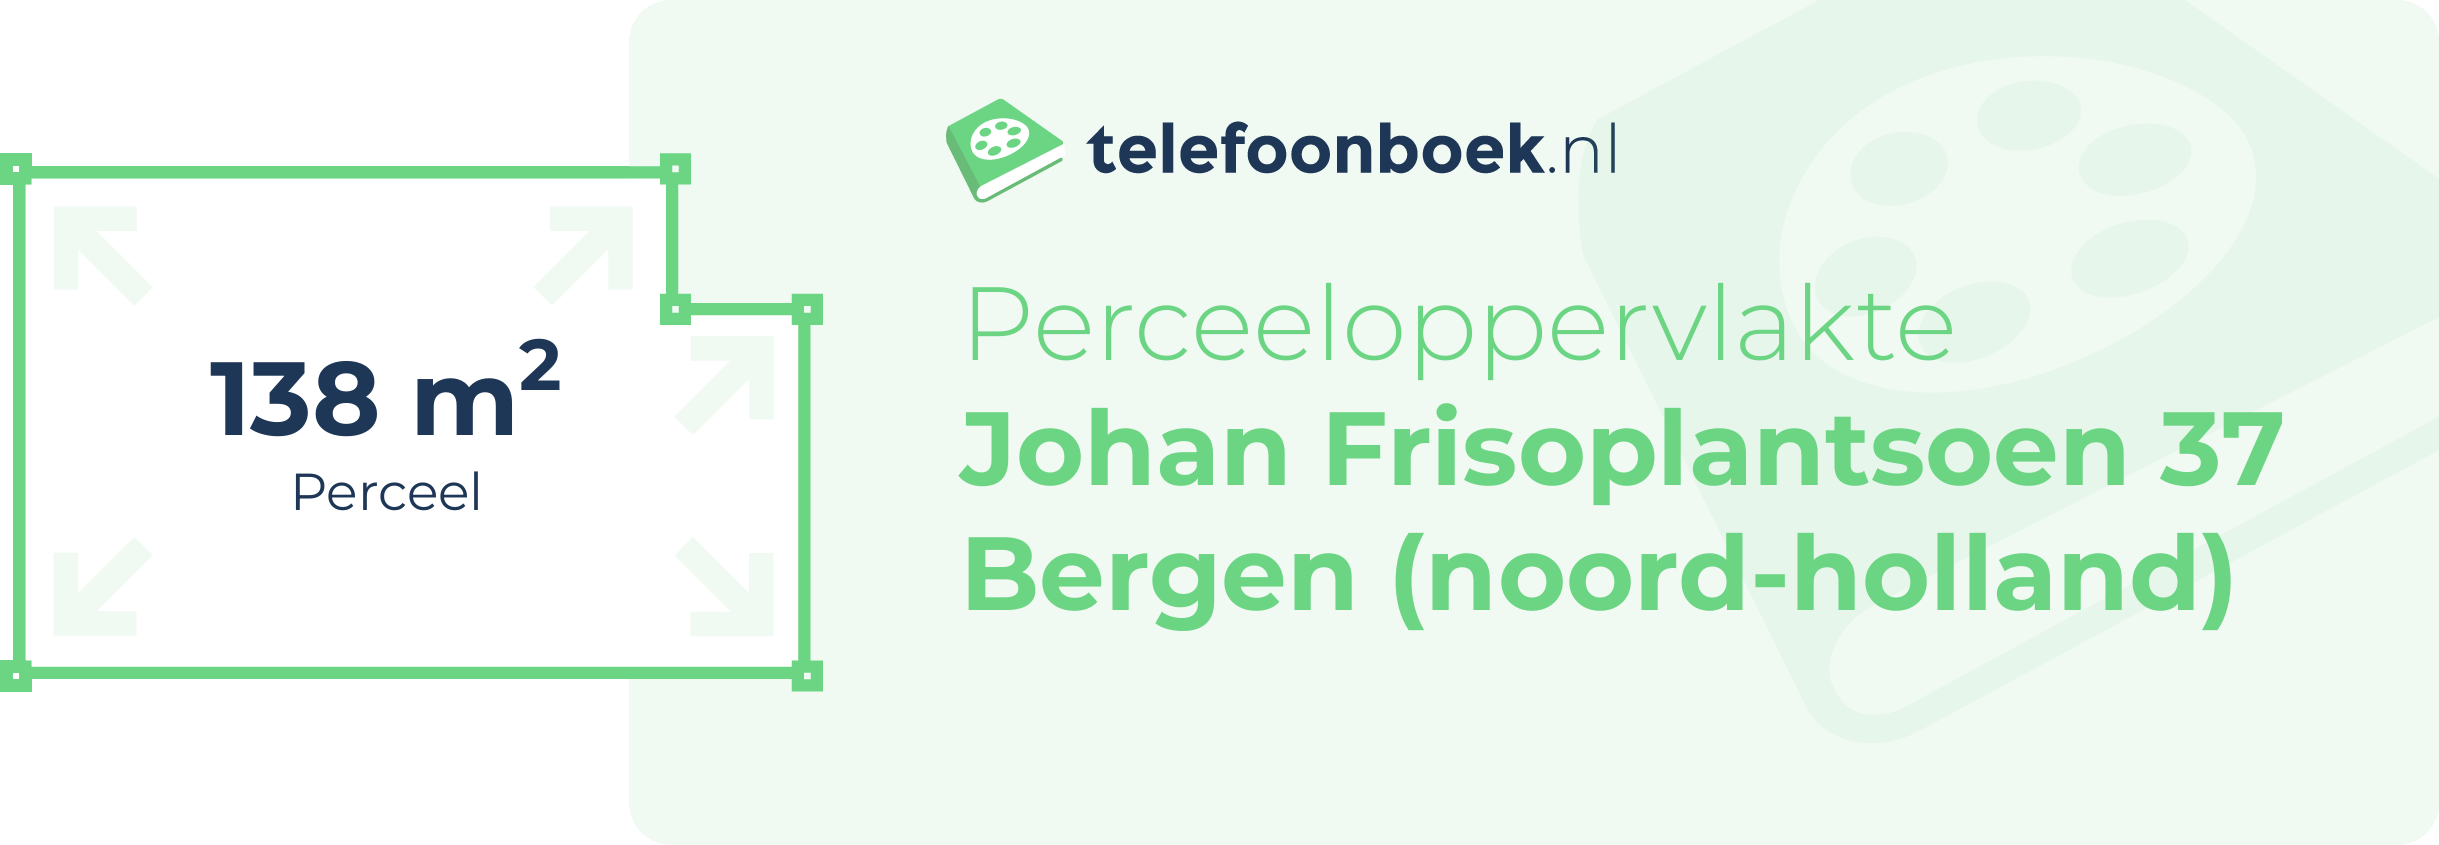 Perceeloppervlakte Johan Frisoplantsoen 37 Bergen (Noord-Holland)